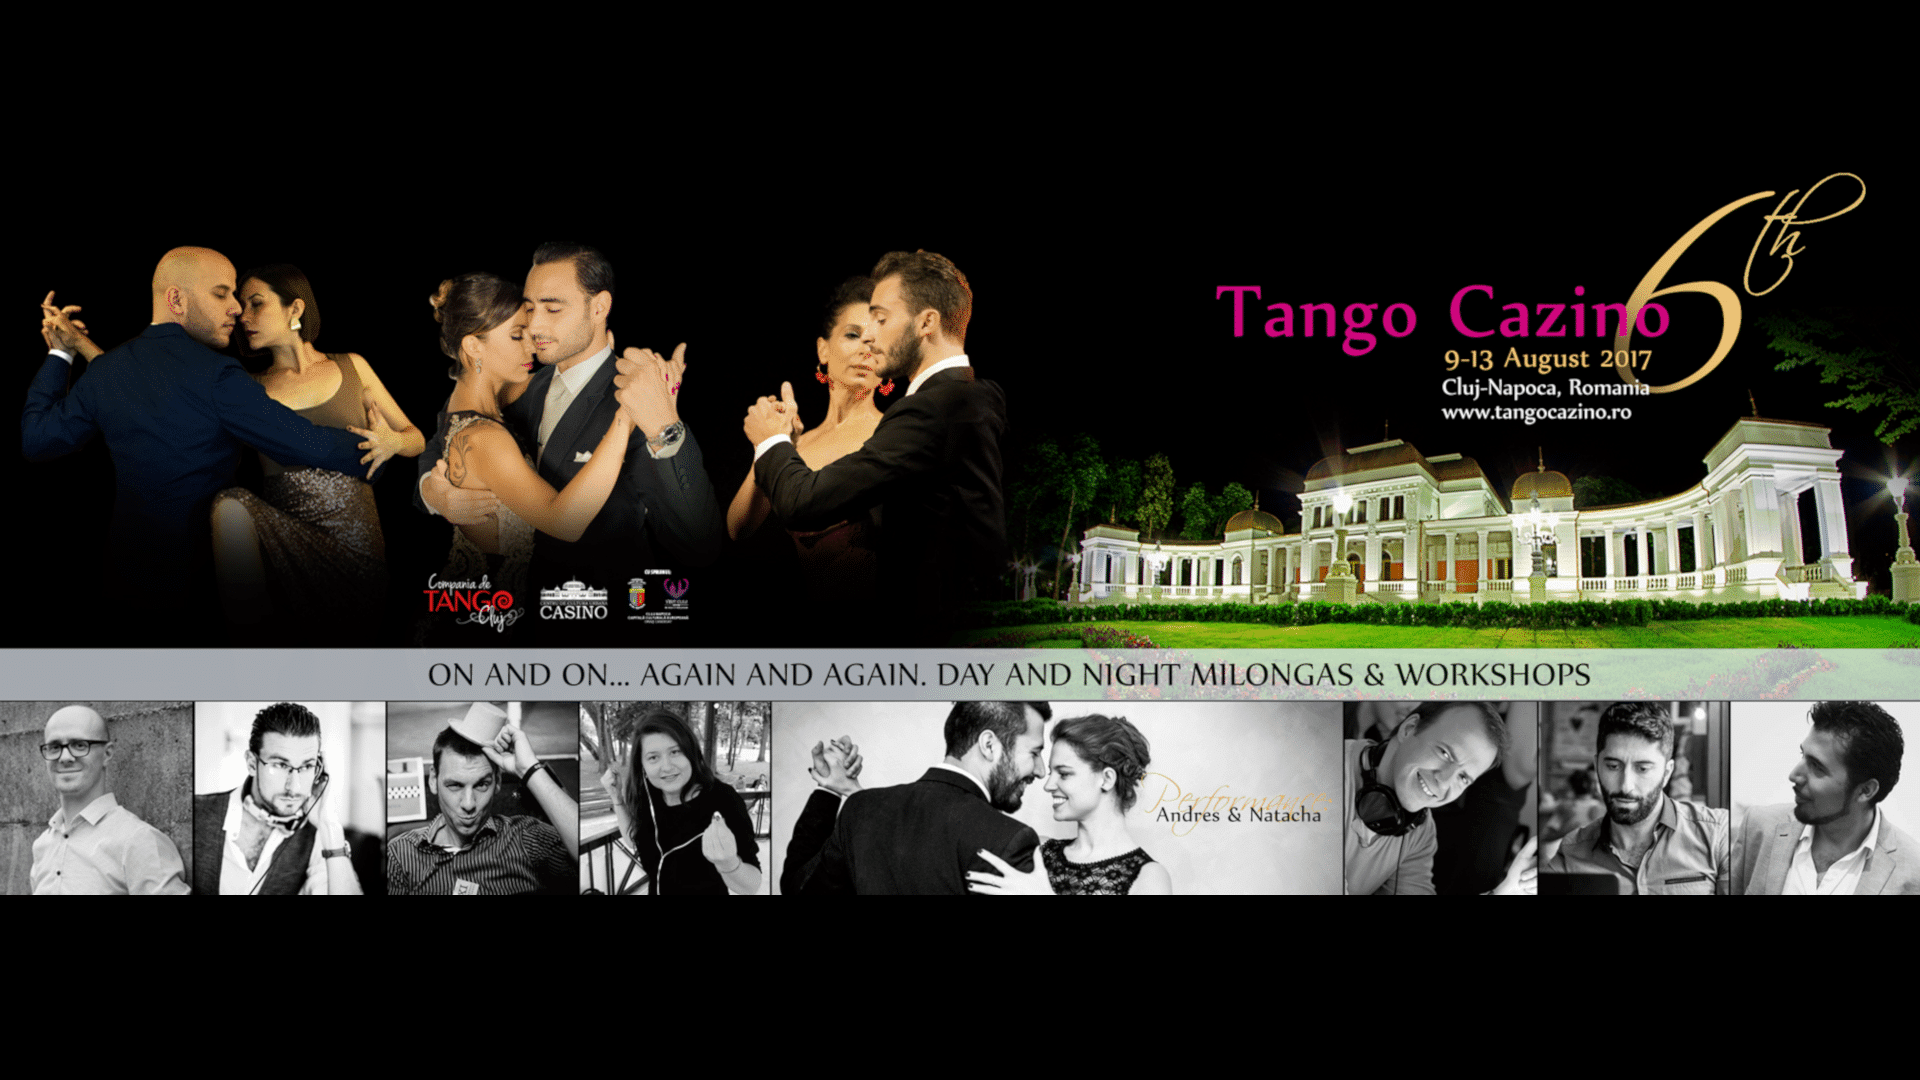 Tango Cazino Festival 2017 Preview Image